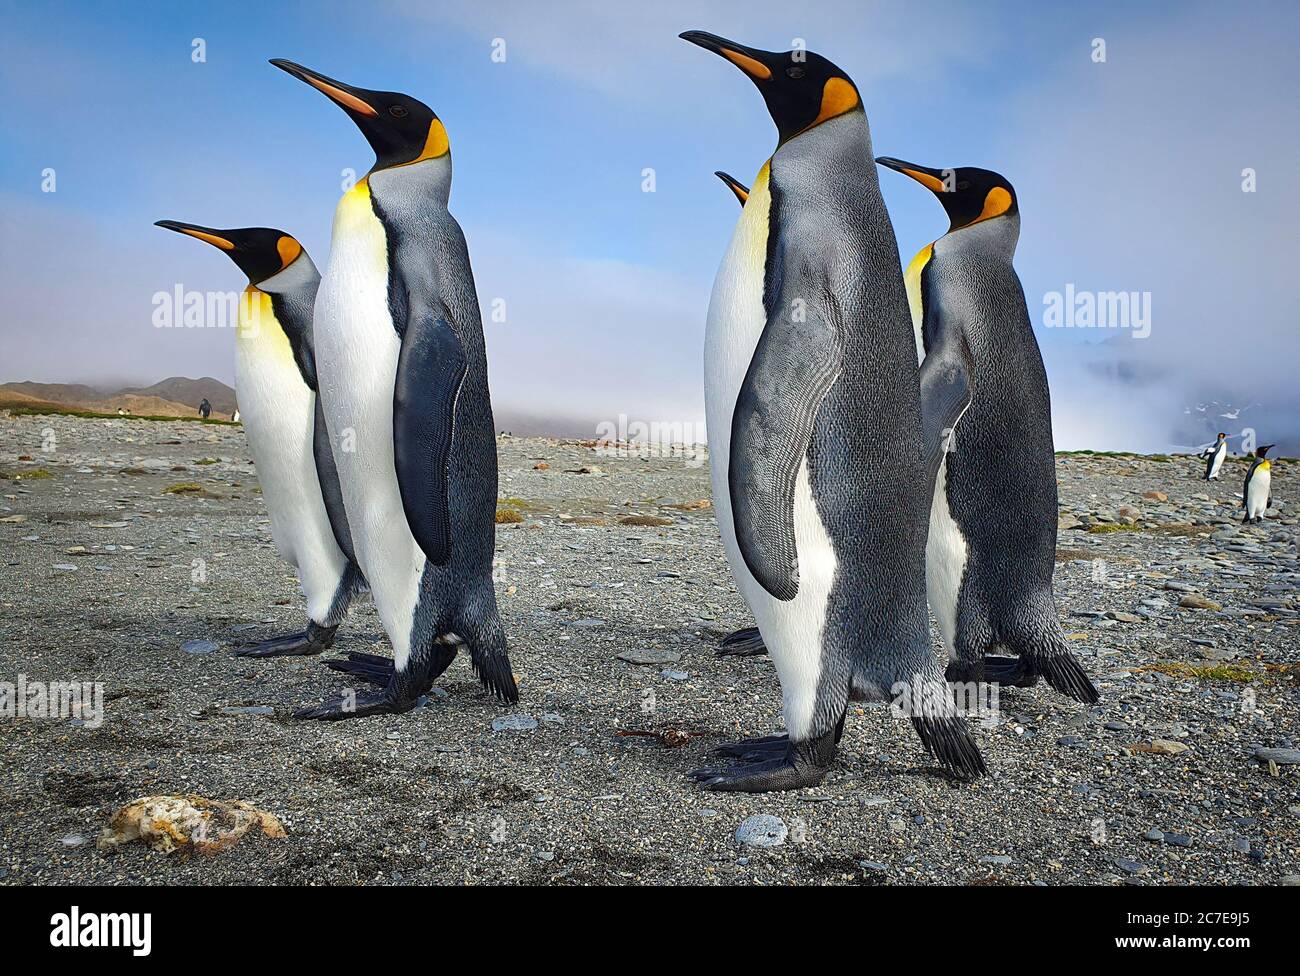 Cinco pingüinos azules se pararon en la arena gris con nubes y colinas al fondo en el sur de Georgia Foto de stock